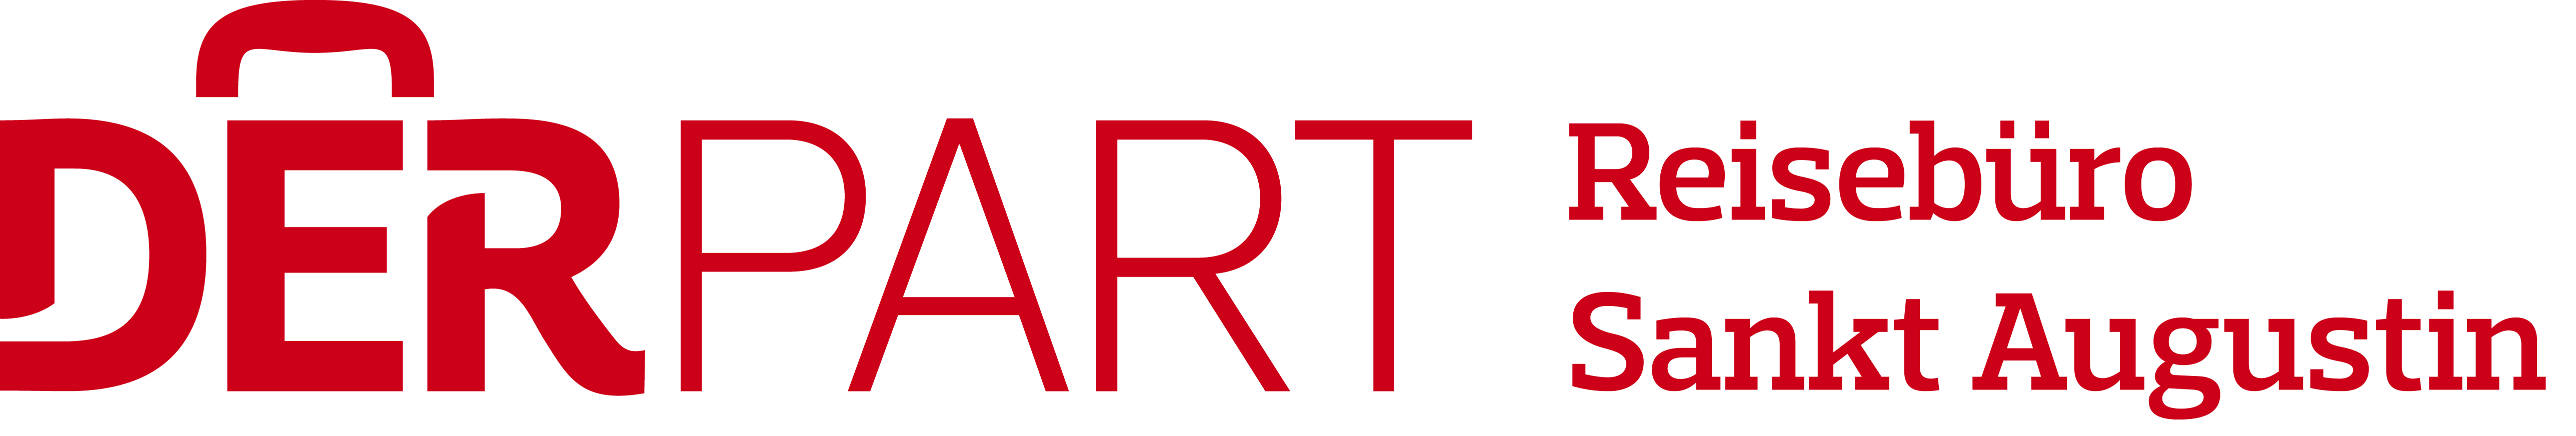 Logo_DERPART_SanktAugustin_RGB